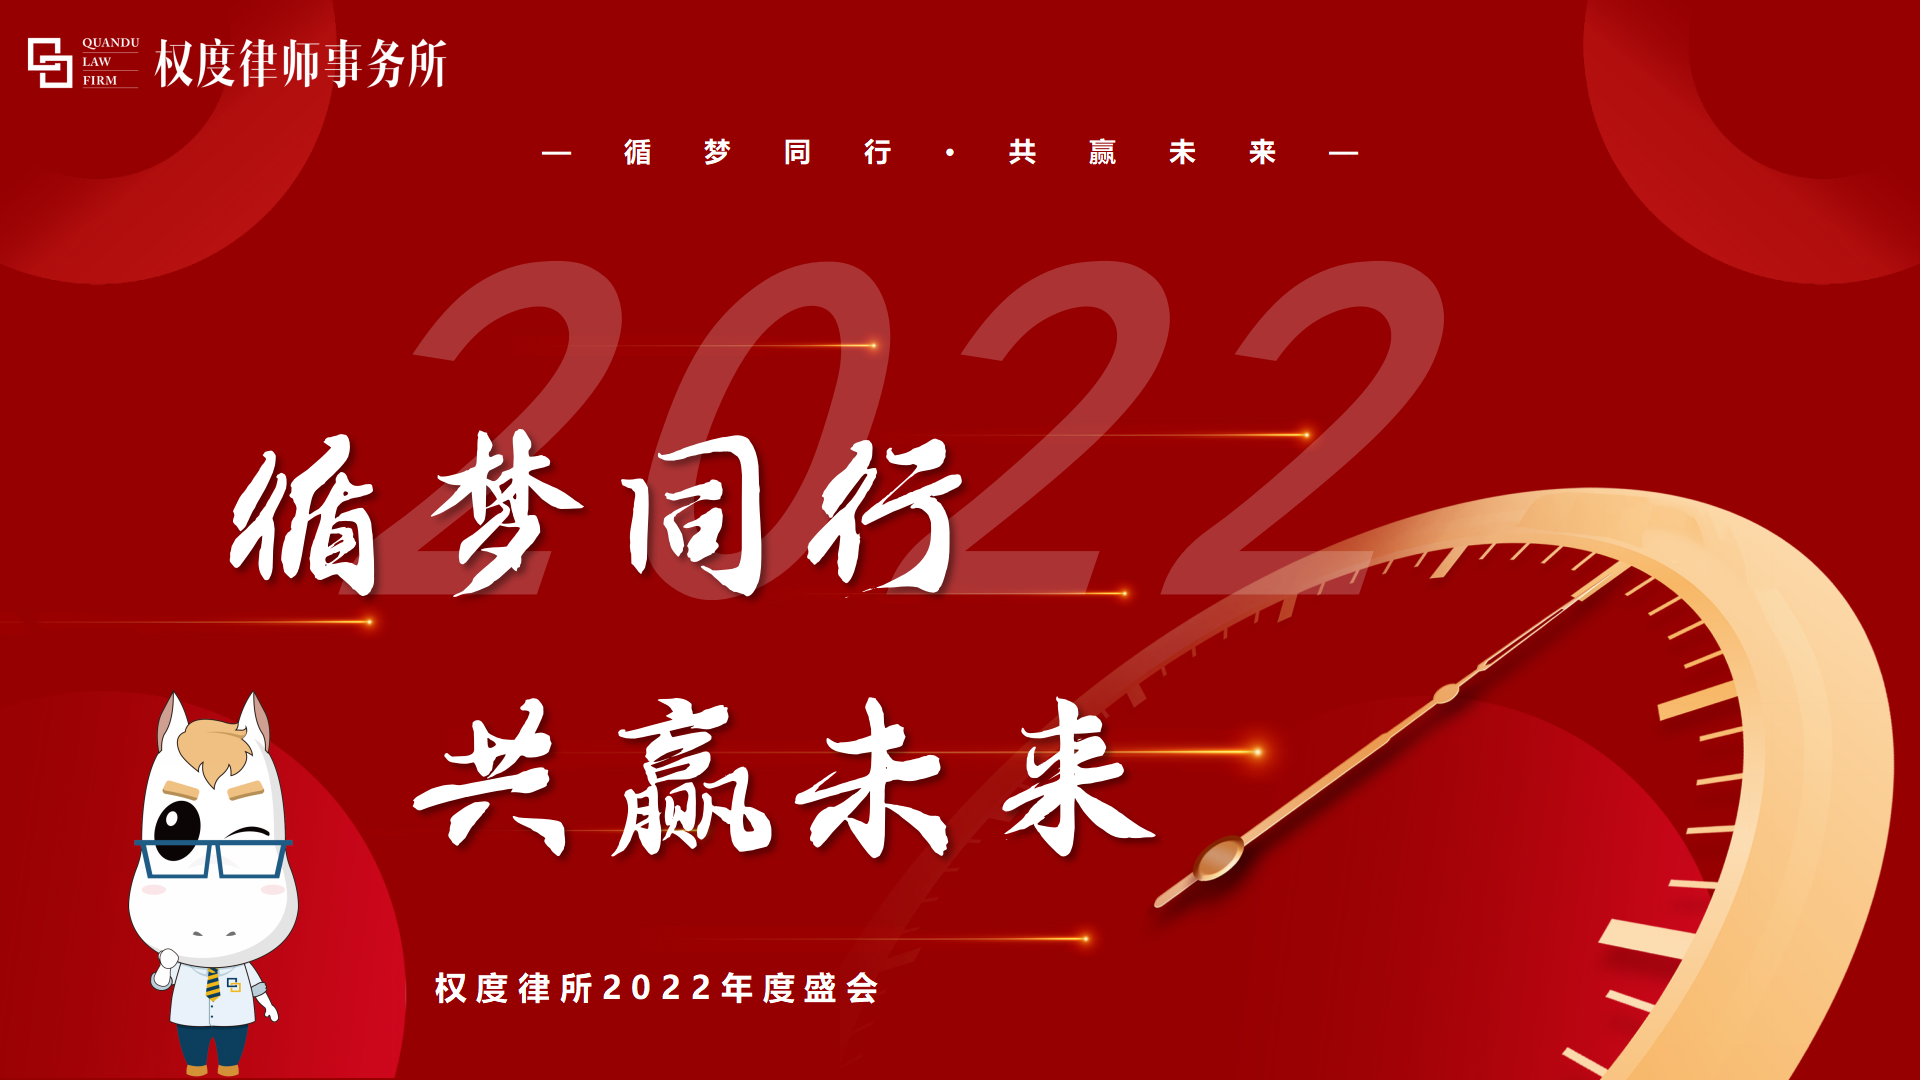 权度律所丨“循梦同行，共赢未来”湖南权度律师事务所2022年度盛会